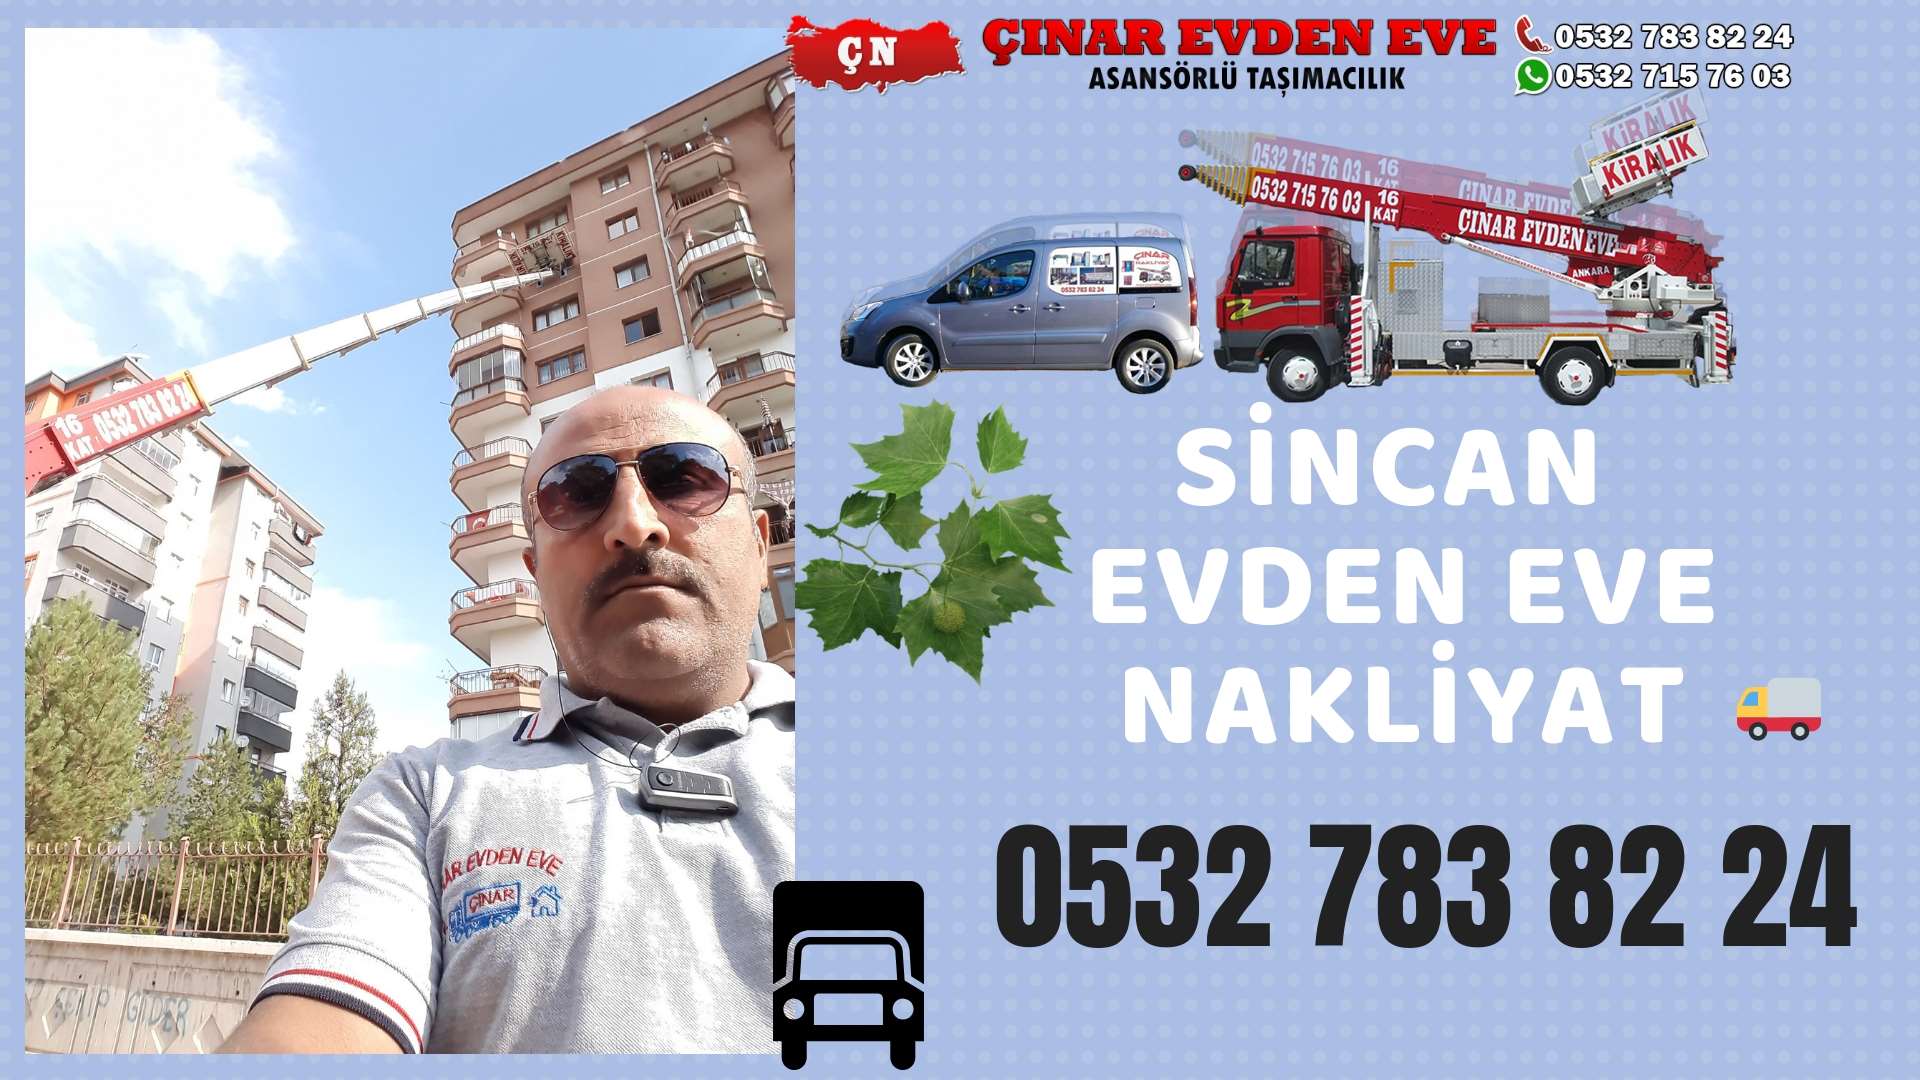 Ankara Sincan Evden Eve Nakliyat, Asansörlü Taşımacılık, Ofis / İş Yeri Taşıma 0532 715 76 03